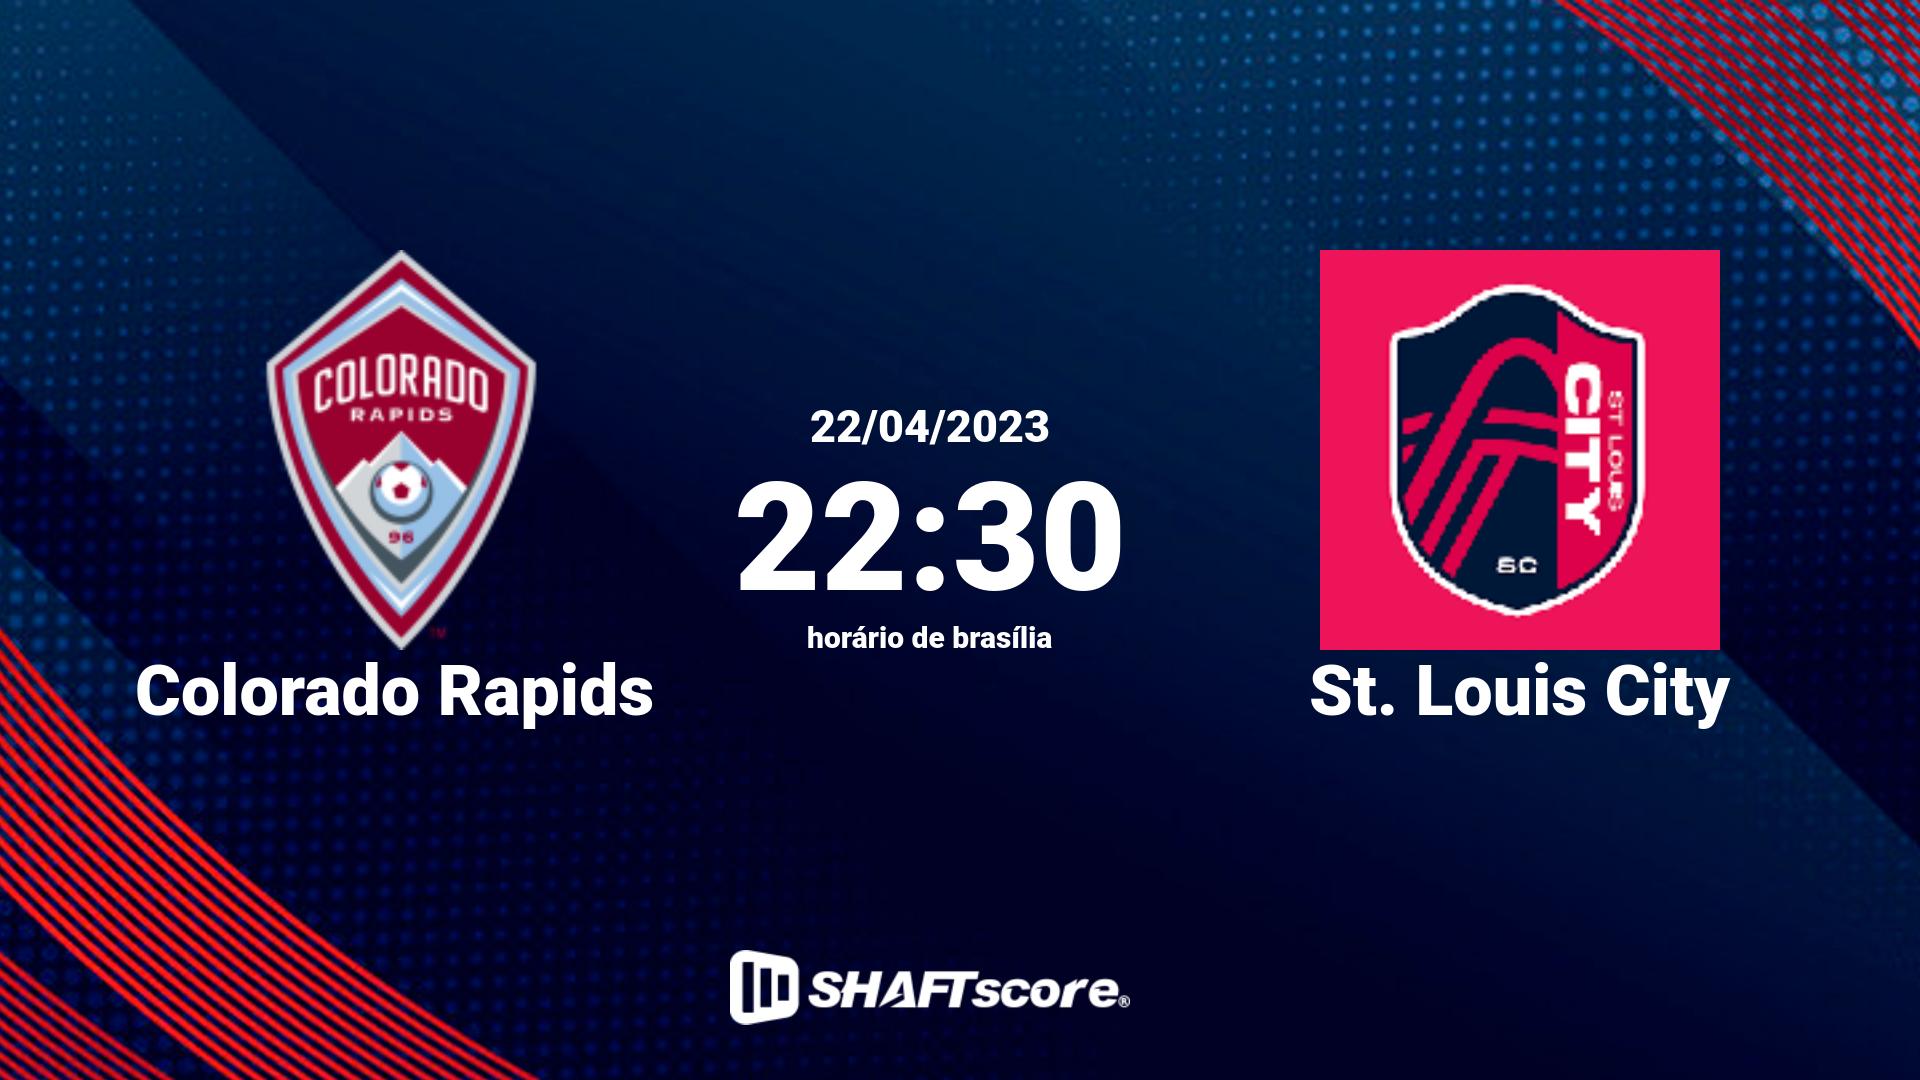 Estatísticas do jogo Colorado Rapids vs St. Louis City 22.04 22:30